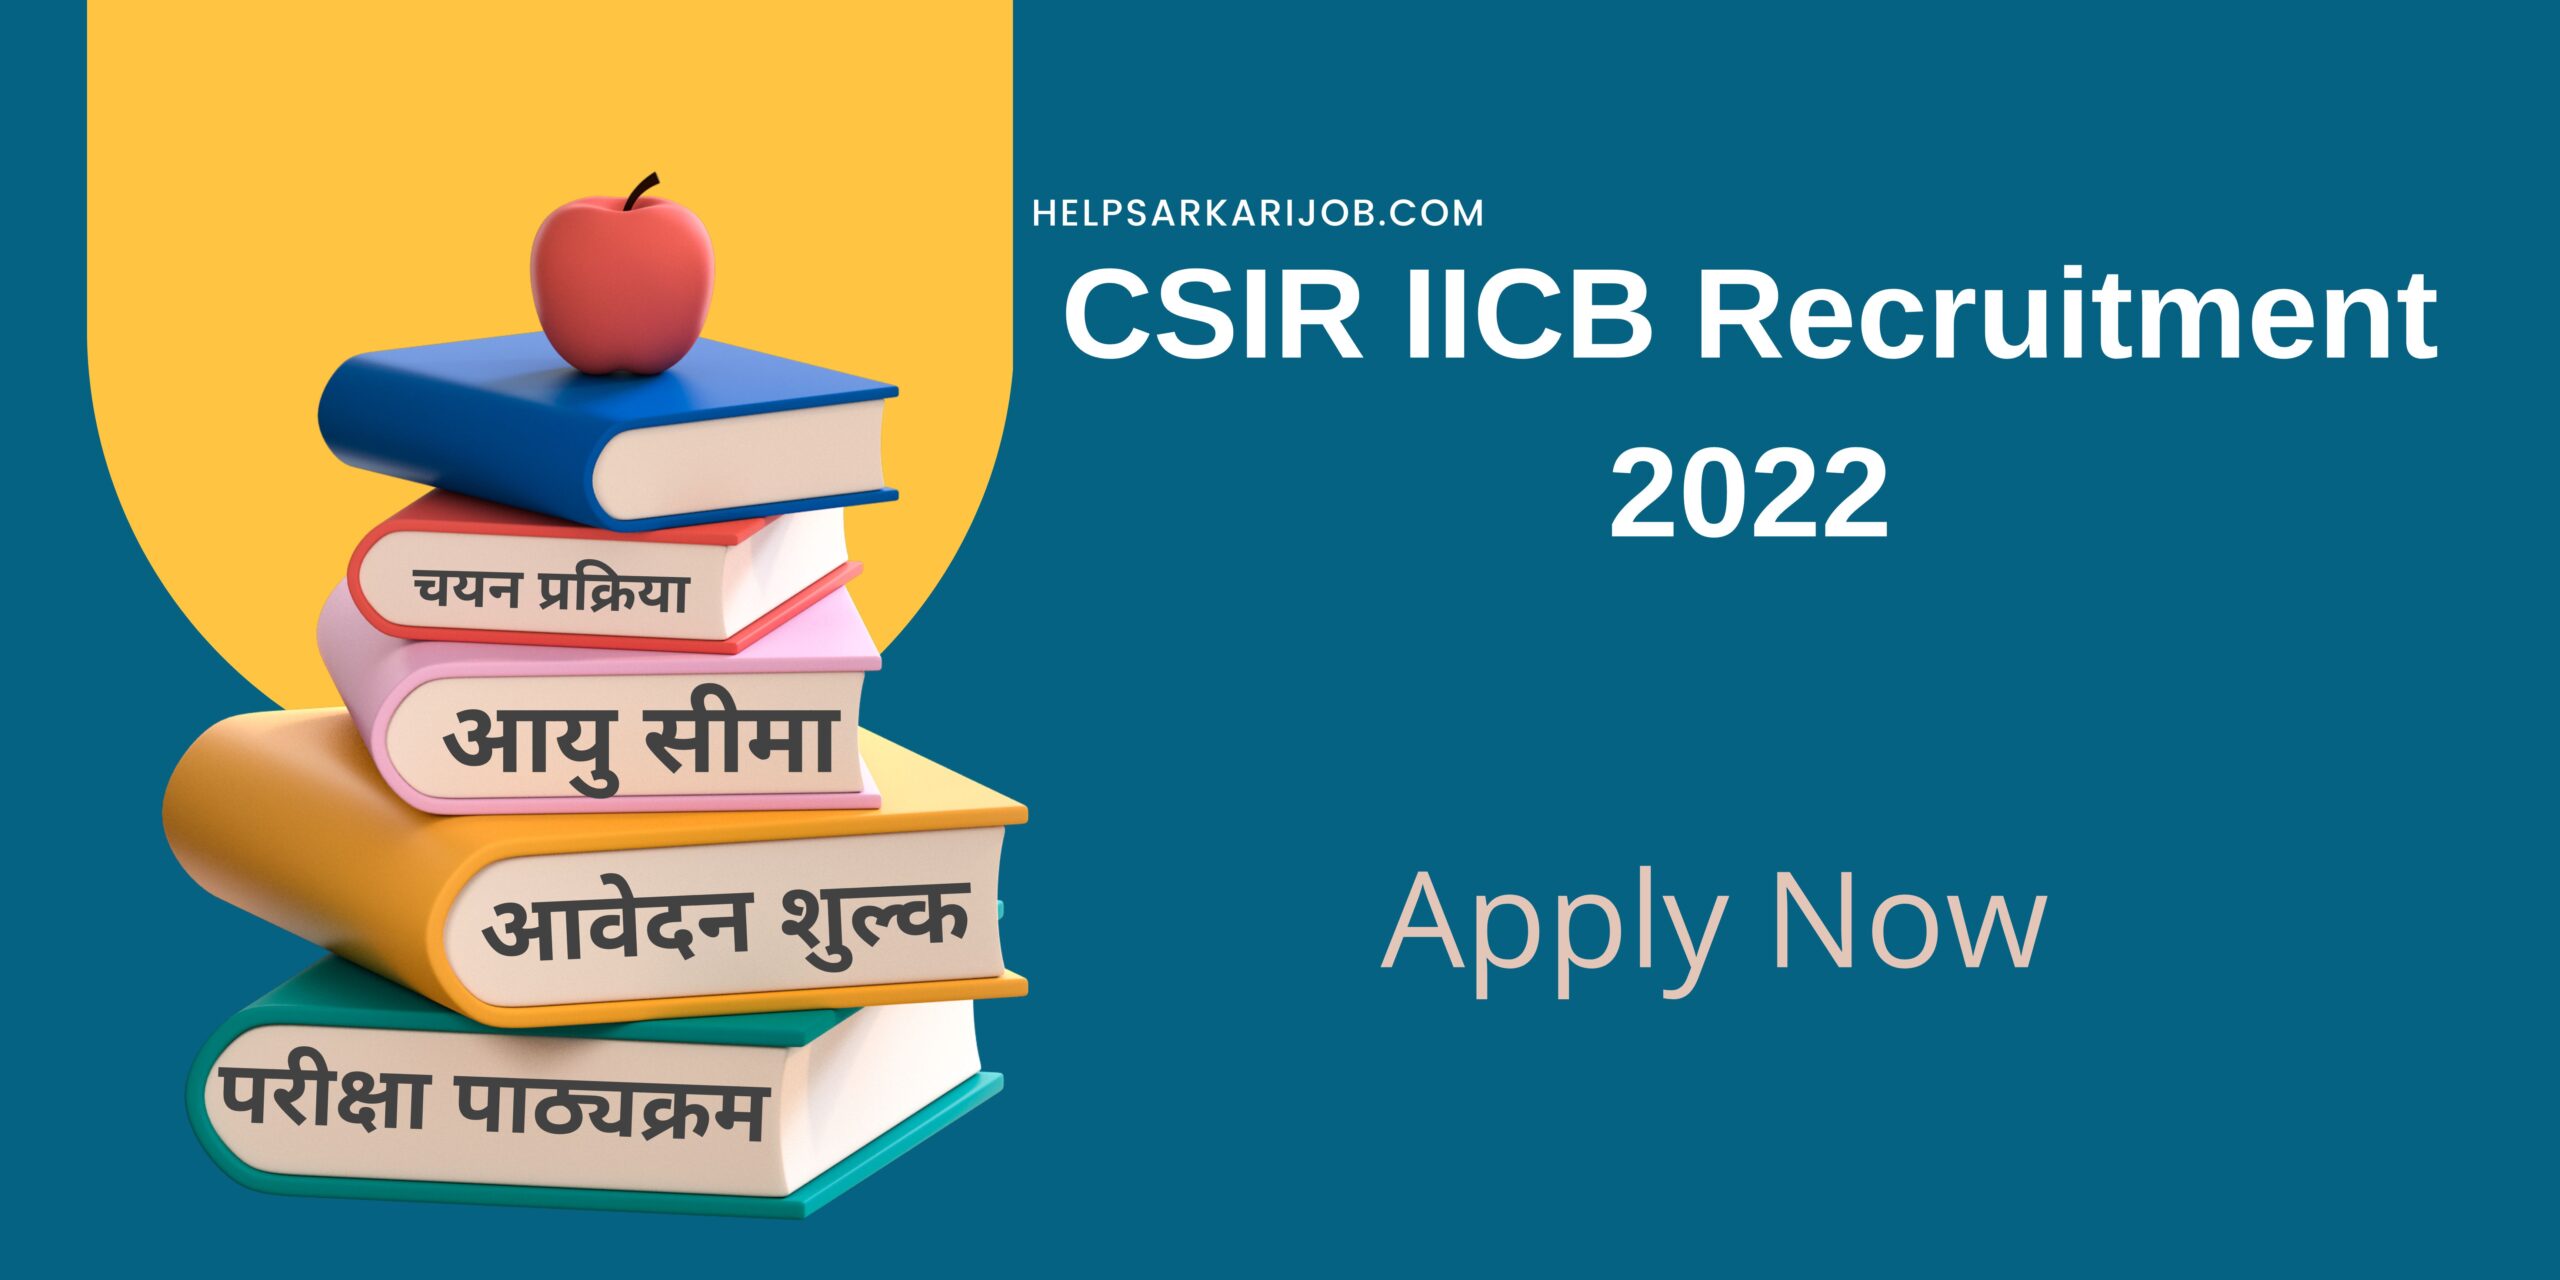 CSIR IICB Recruitment 2022 scaled -